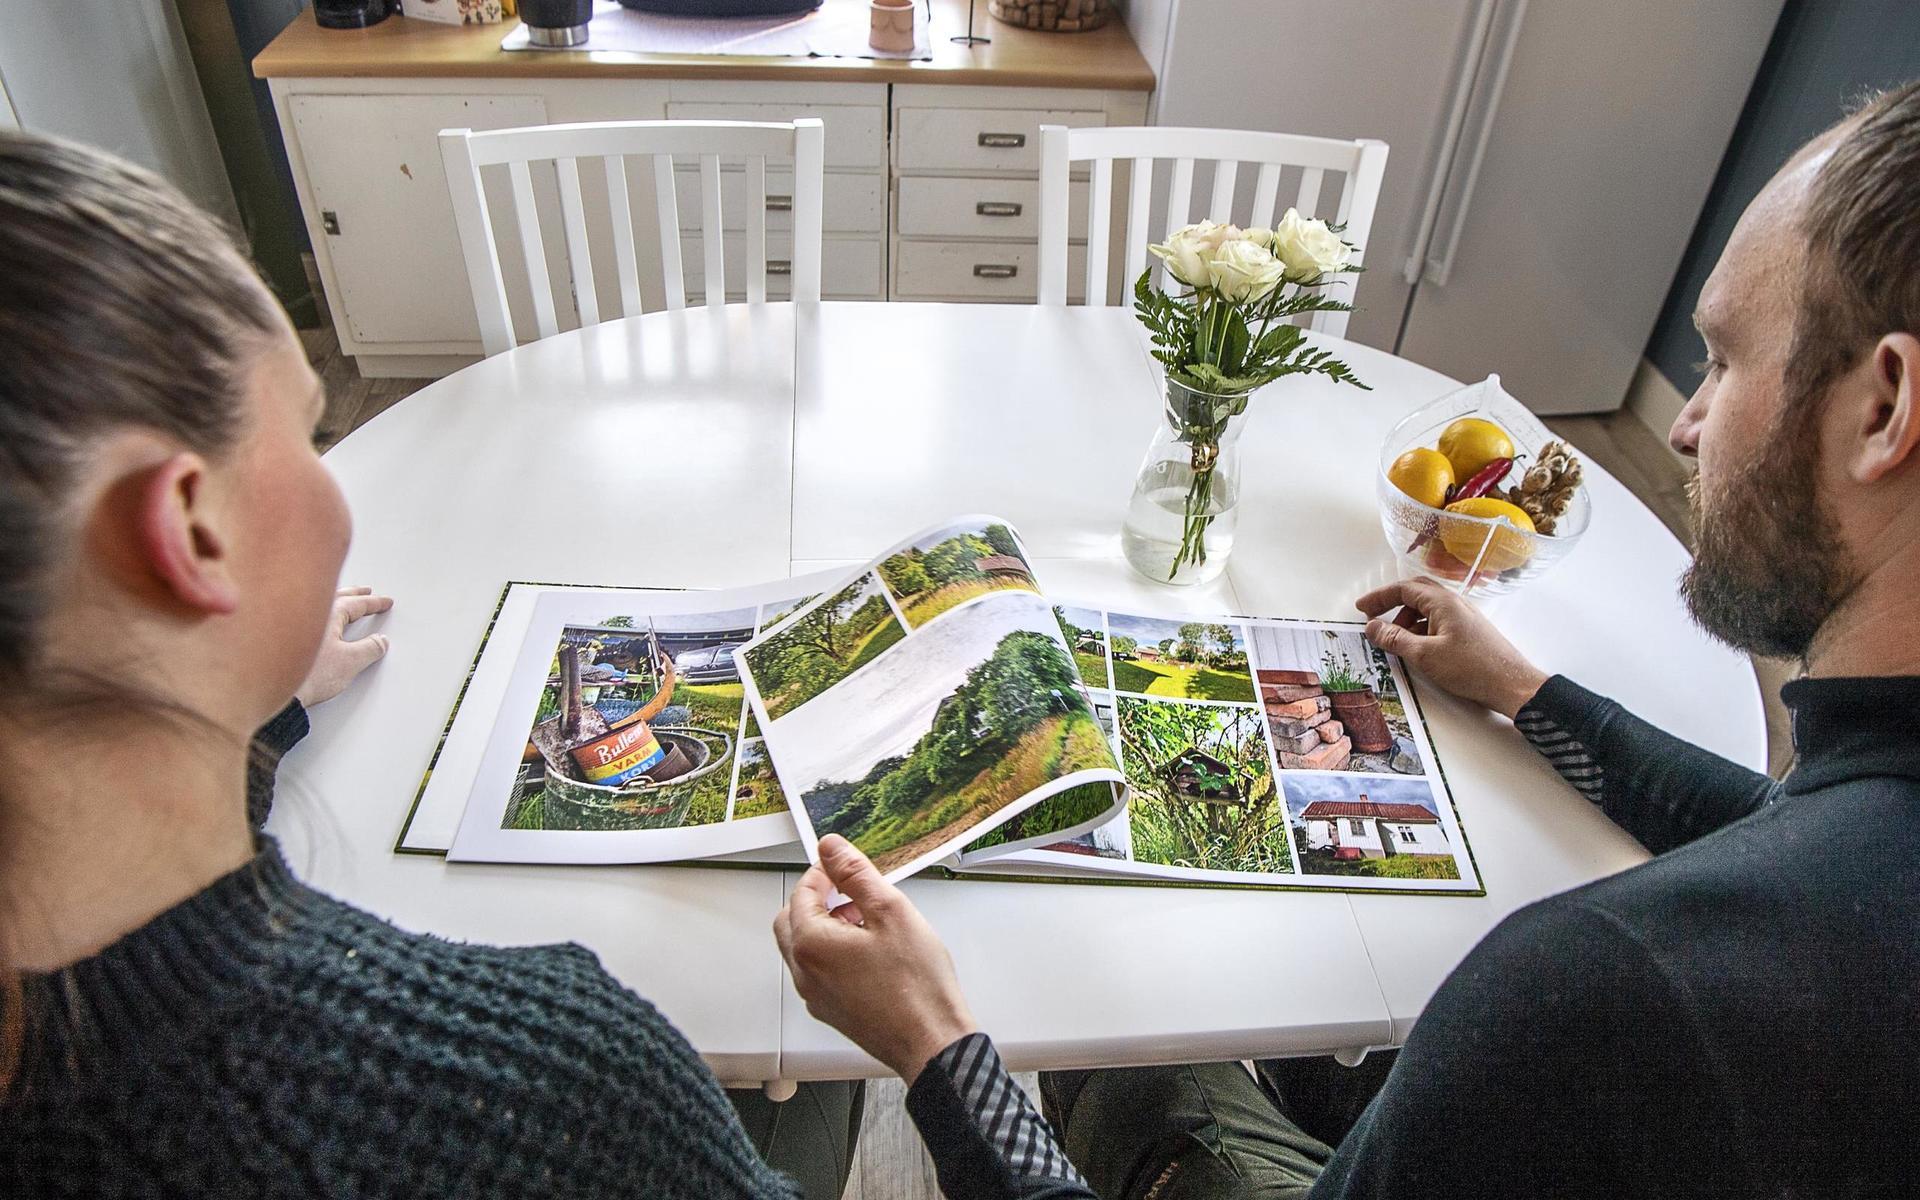 Paret har tryckt upp en fotobok med bilder från det första året i Gullered. Visionen är att göra en varje år, för att få en tydlig tidslinje över vad som händer varje år.